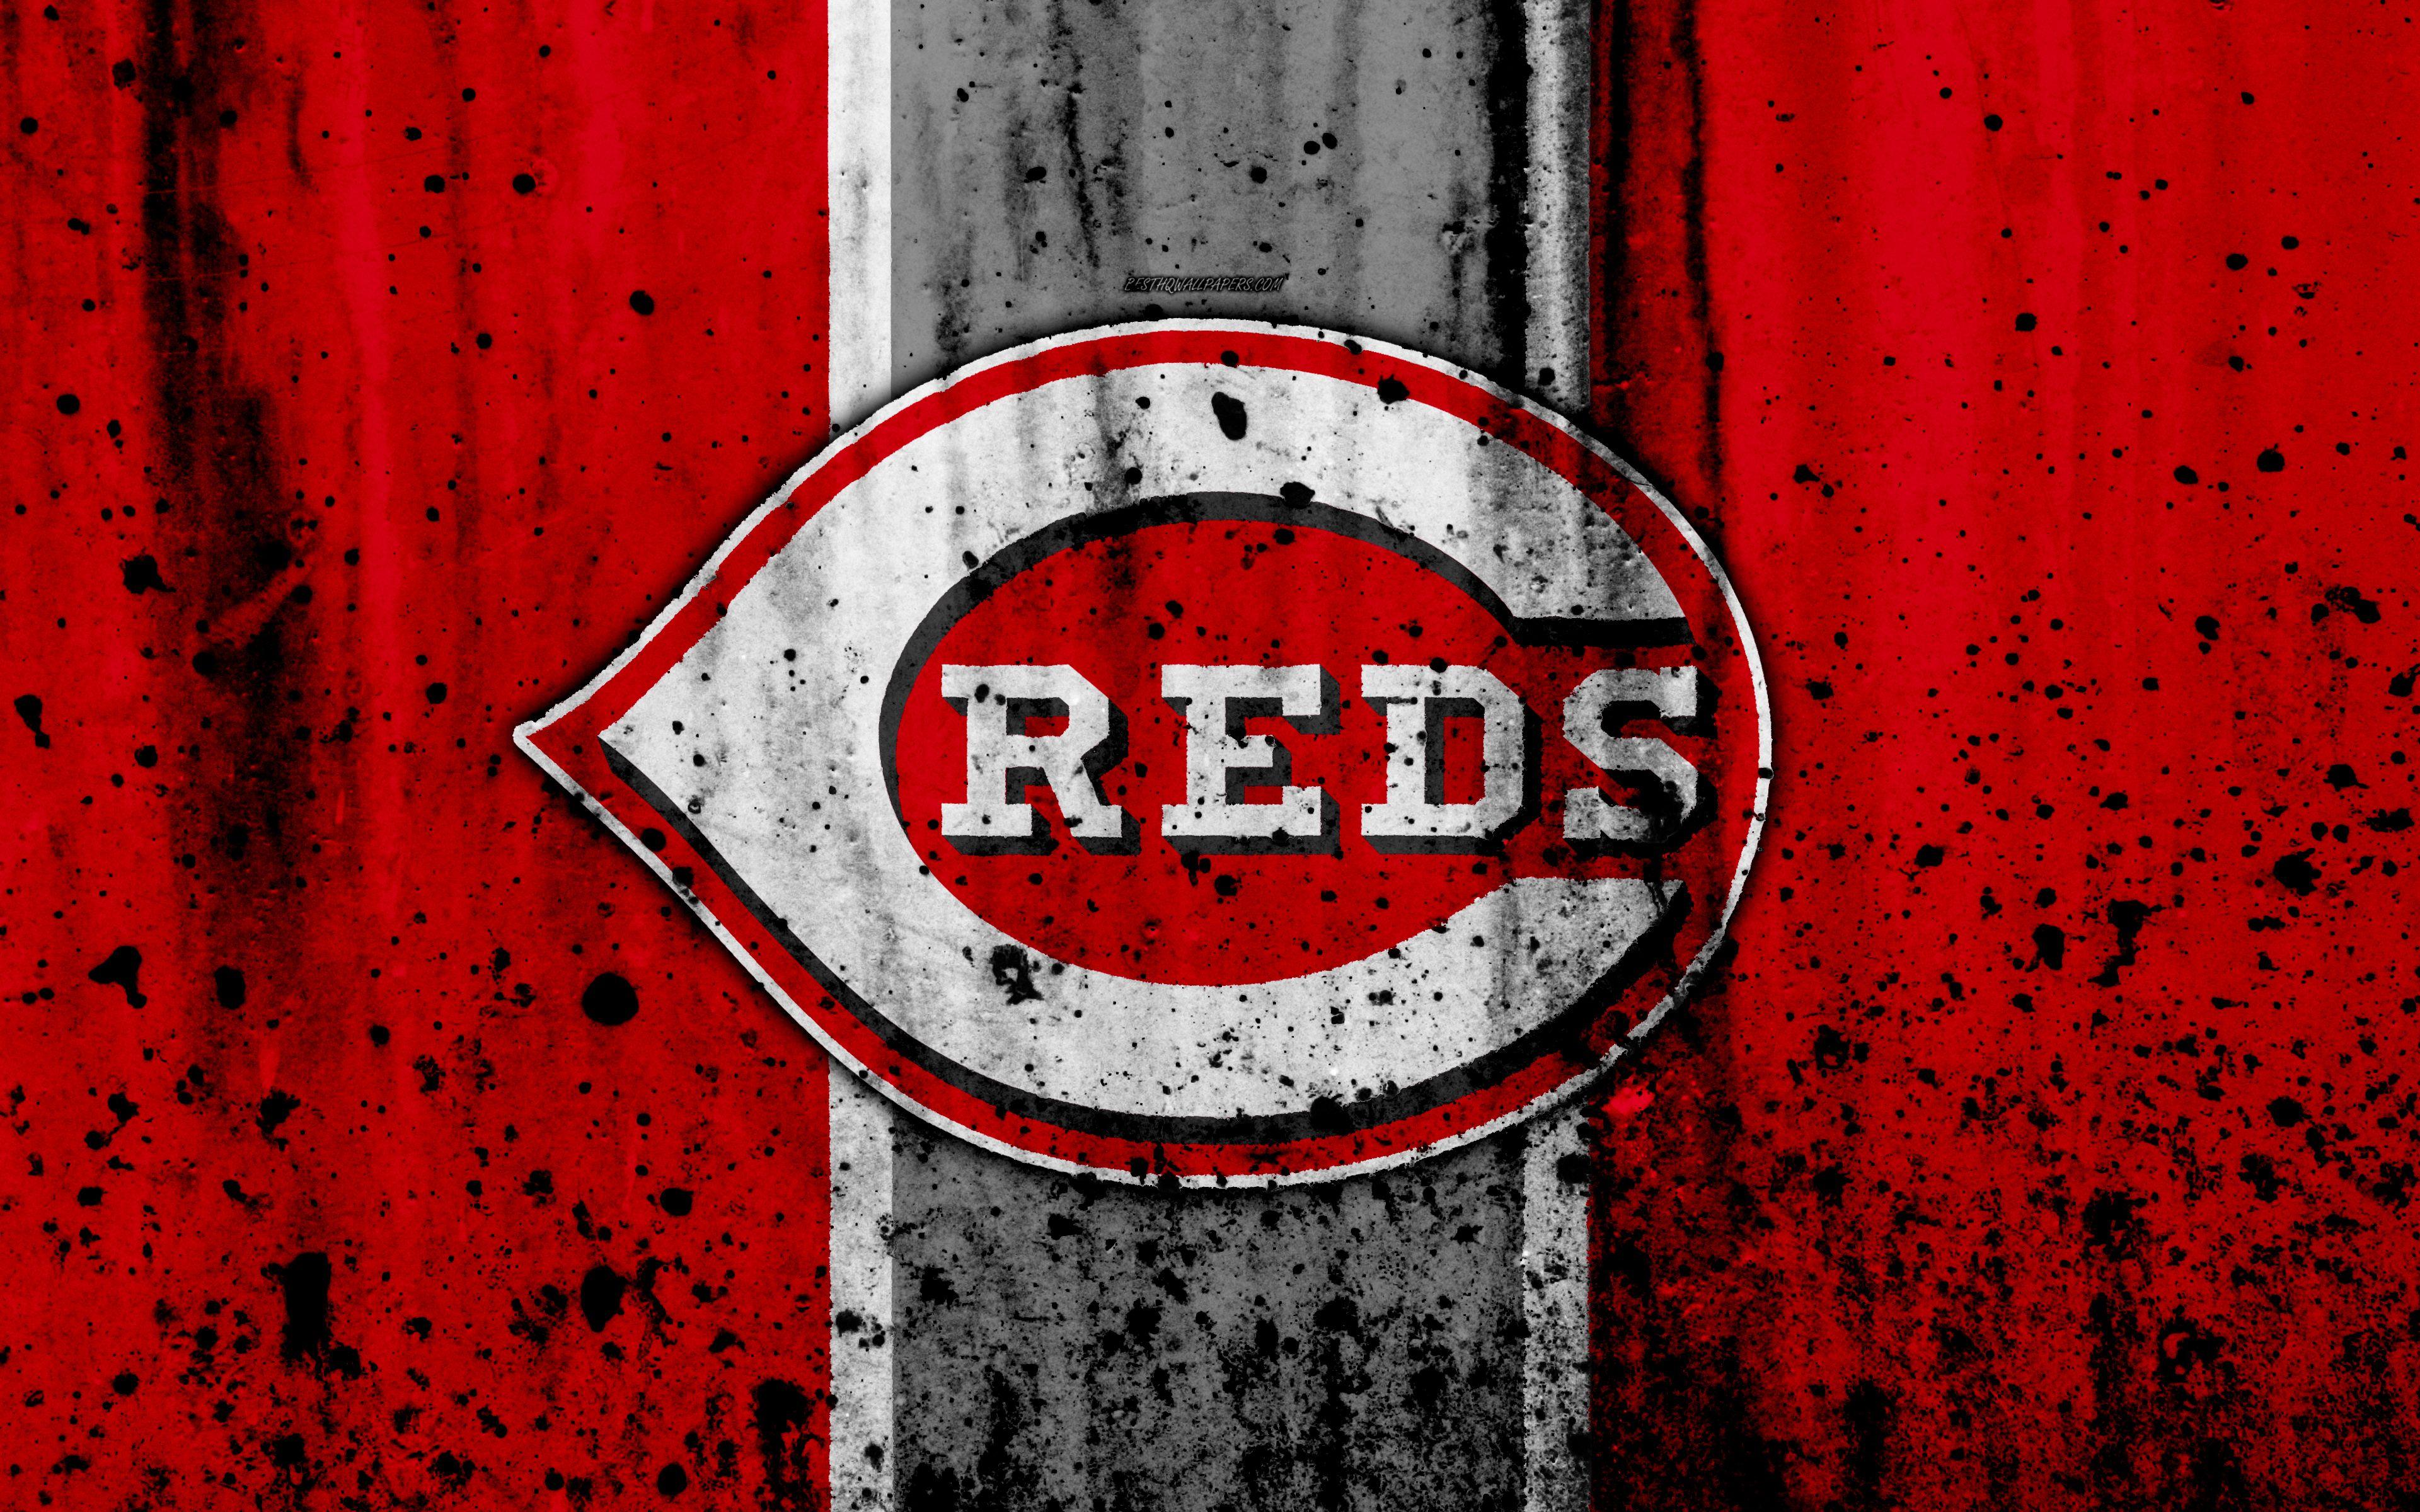 Cincinnati Reds Wallpapers - Top Free Cincinnati Reds Backgrounds